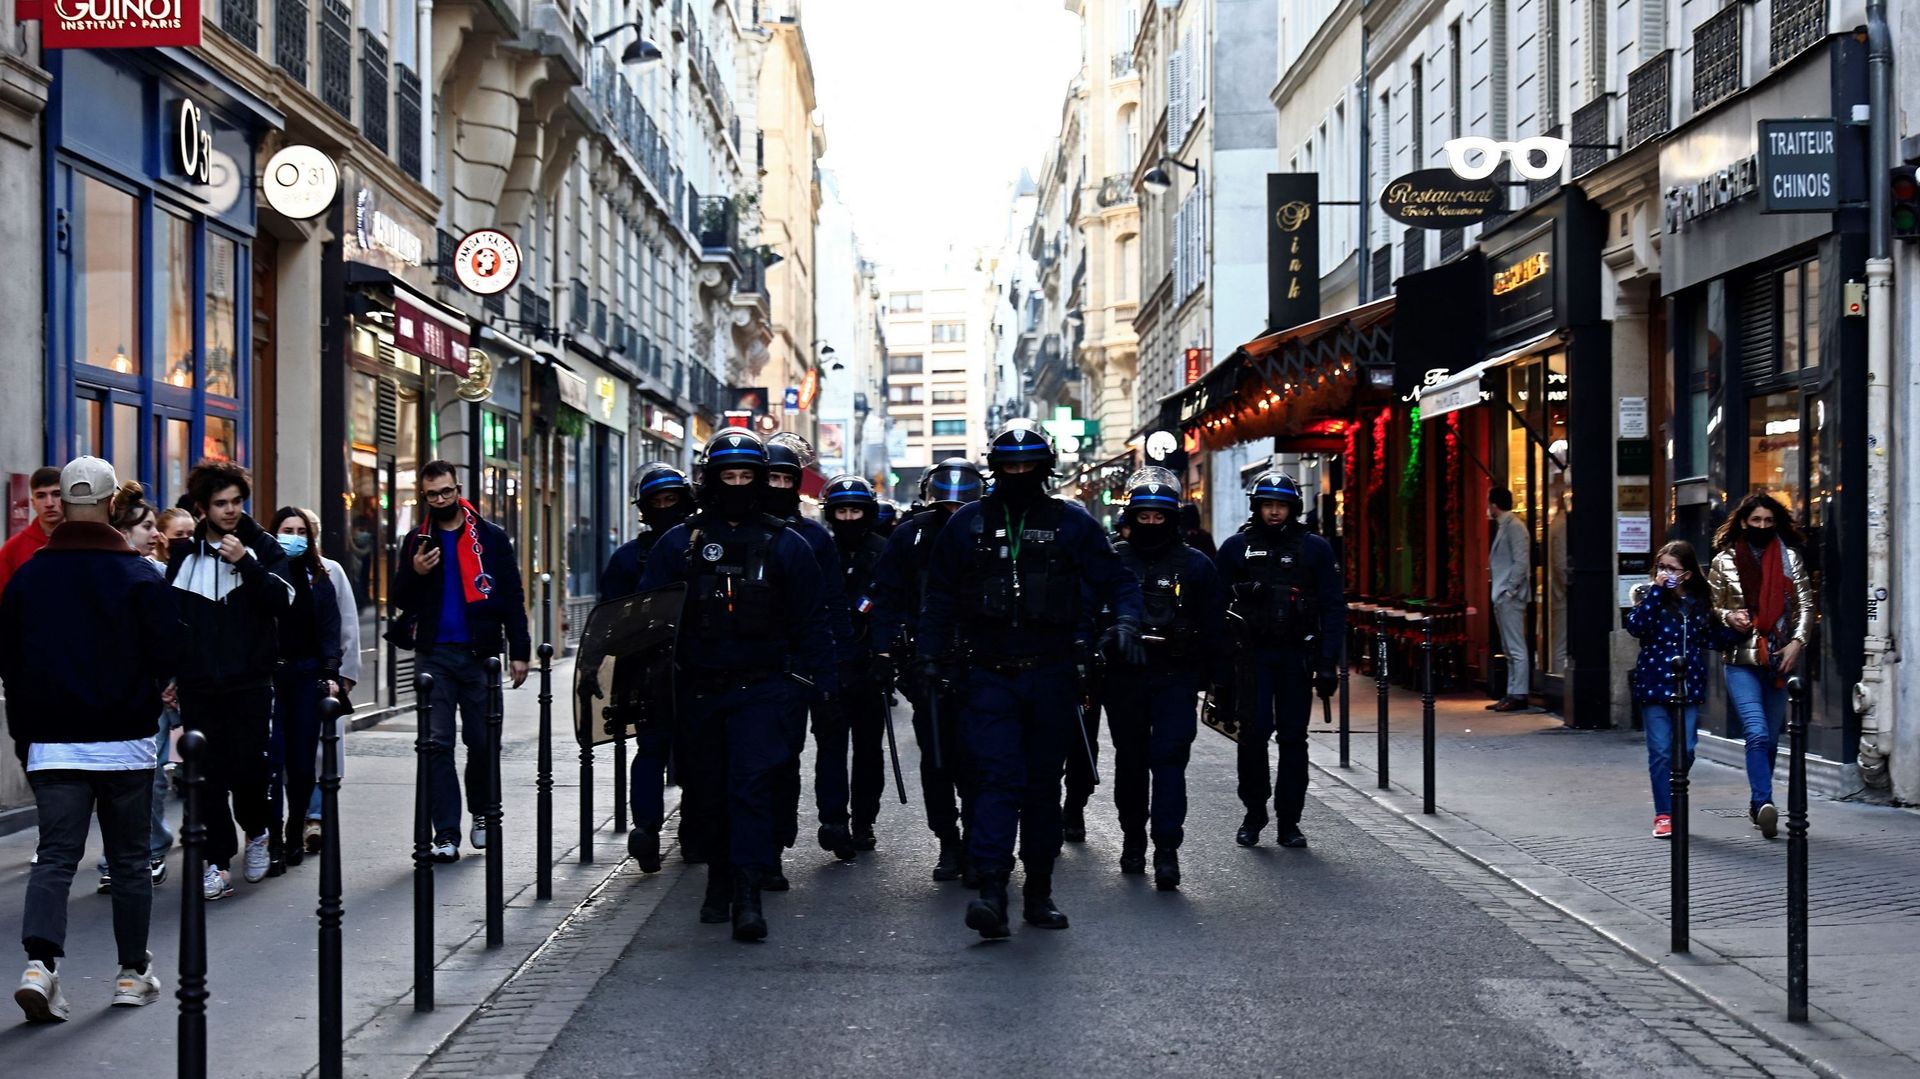 Des policiers antiémeutes français marchent dans une rue de Paris parmi des passants, le 12 février 2022, alors que des convois de manifestants appelés "Convoi de la Liberté" arrivent dans la capitale française.